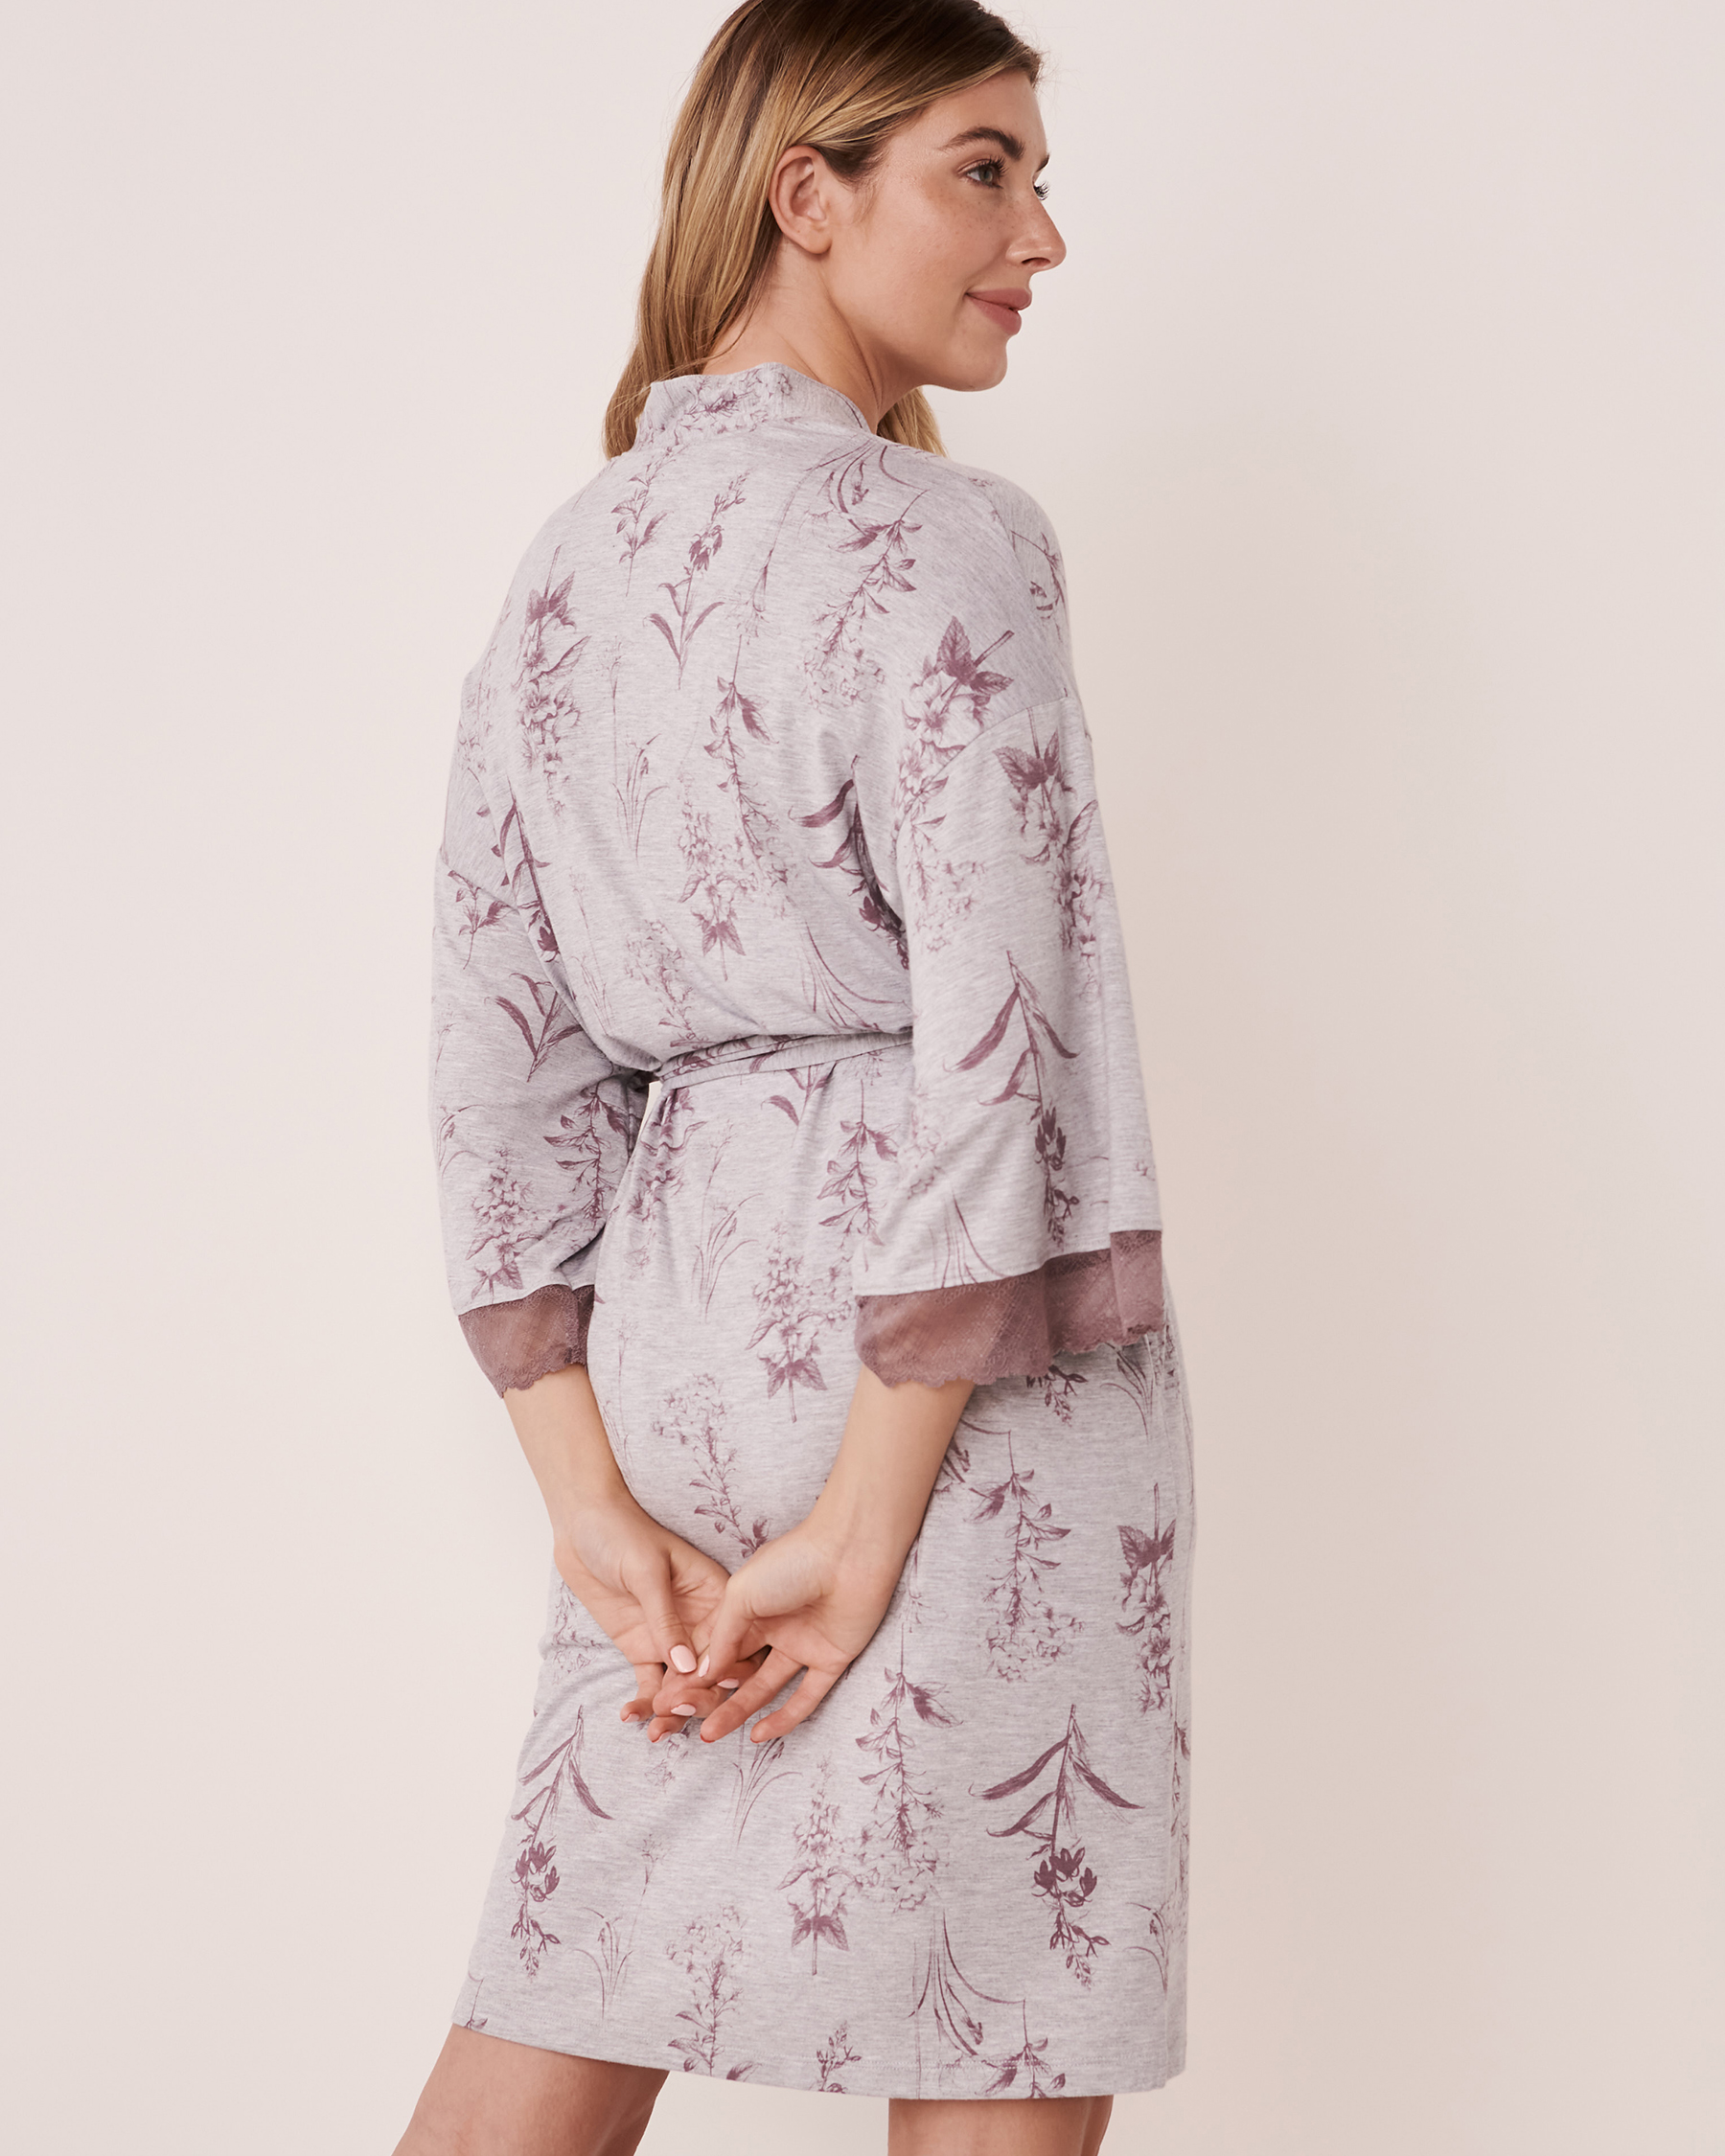 LA VIE EN ROSE Lace Trim Modal Kimono Grey branches 40600087 - View2